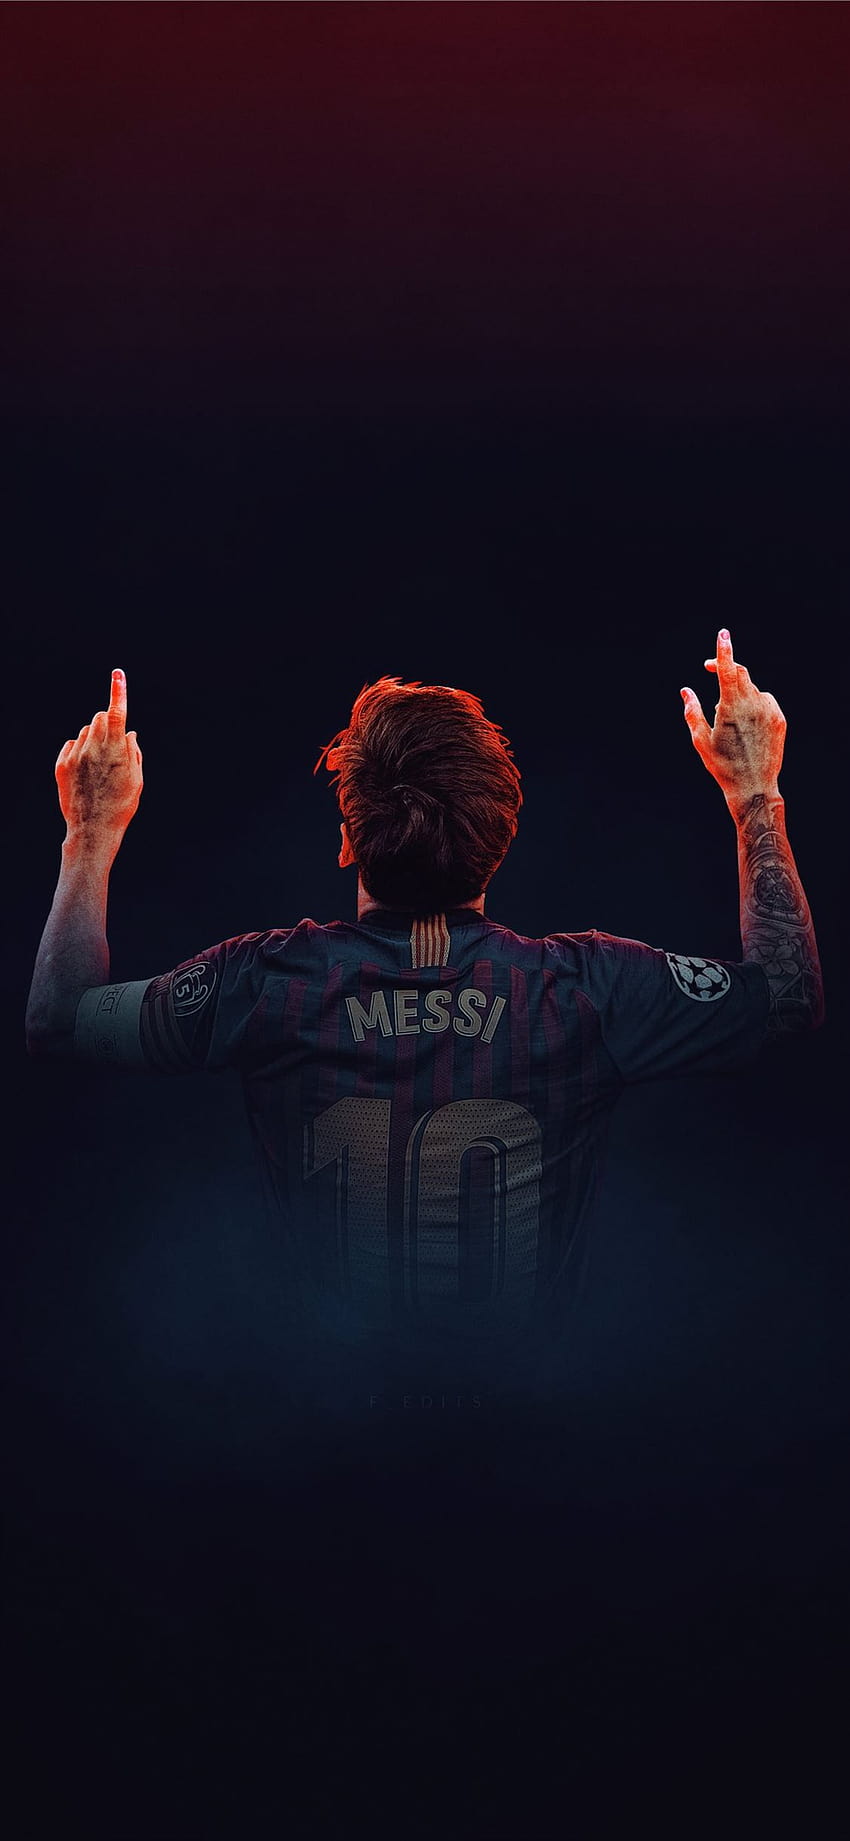 Bạn đang sử dụng iPhone 11 và yêu thích Messi. Chúng tôi đang có rất nhiều hình nền Messi cho iPhone 11 của bạn. Chất lượng hình ảnh vô cùng sắc nét và sống động, tất cả chỉ có tại đường link này. Hãy nhanh tay tải về và làm hình nền cho điện thoại của bạn nào!